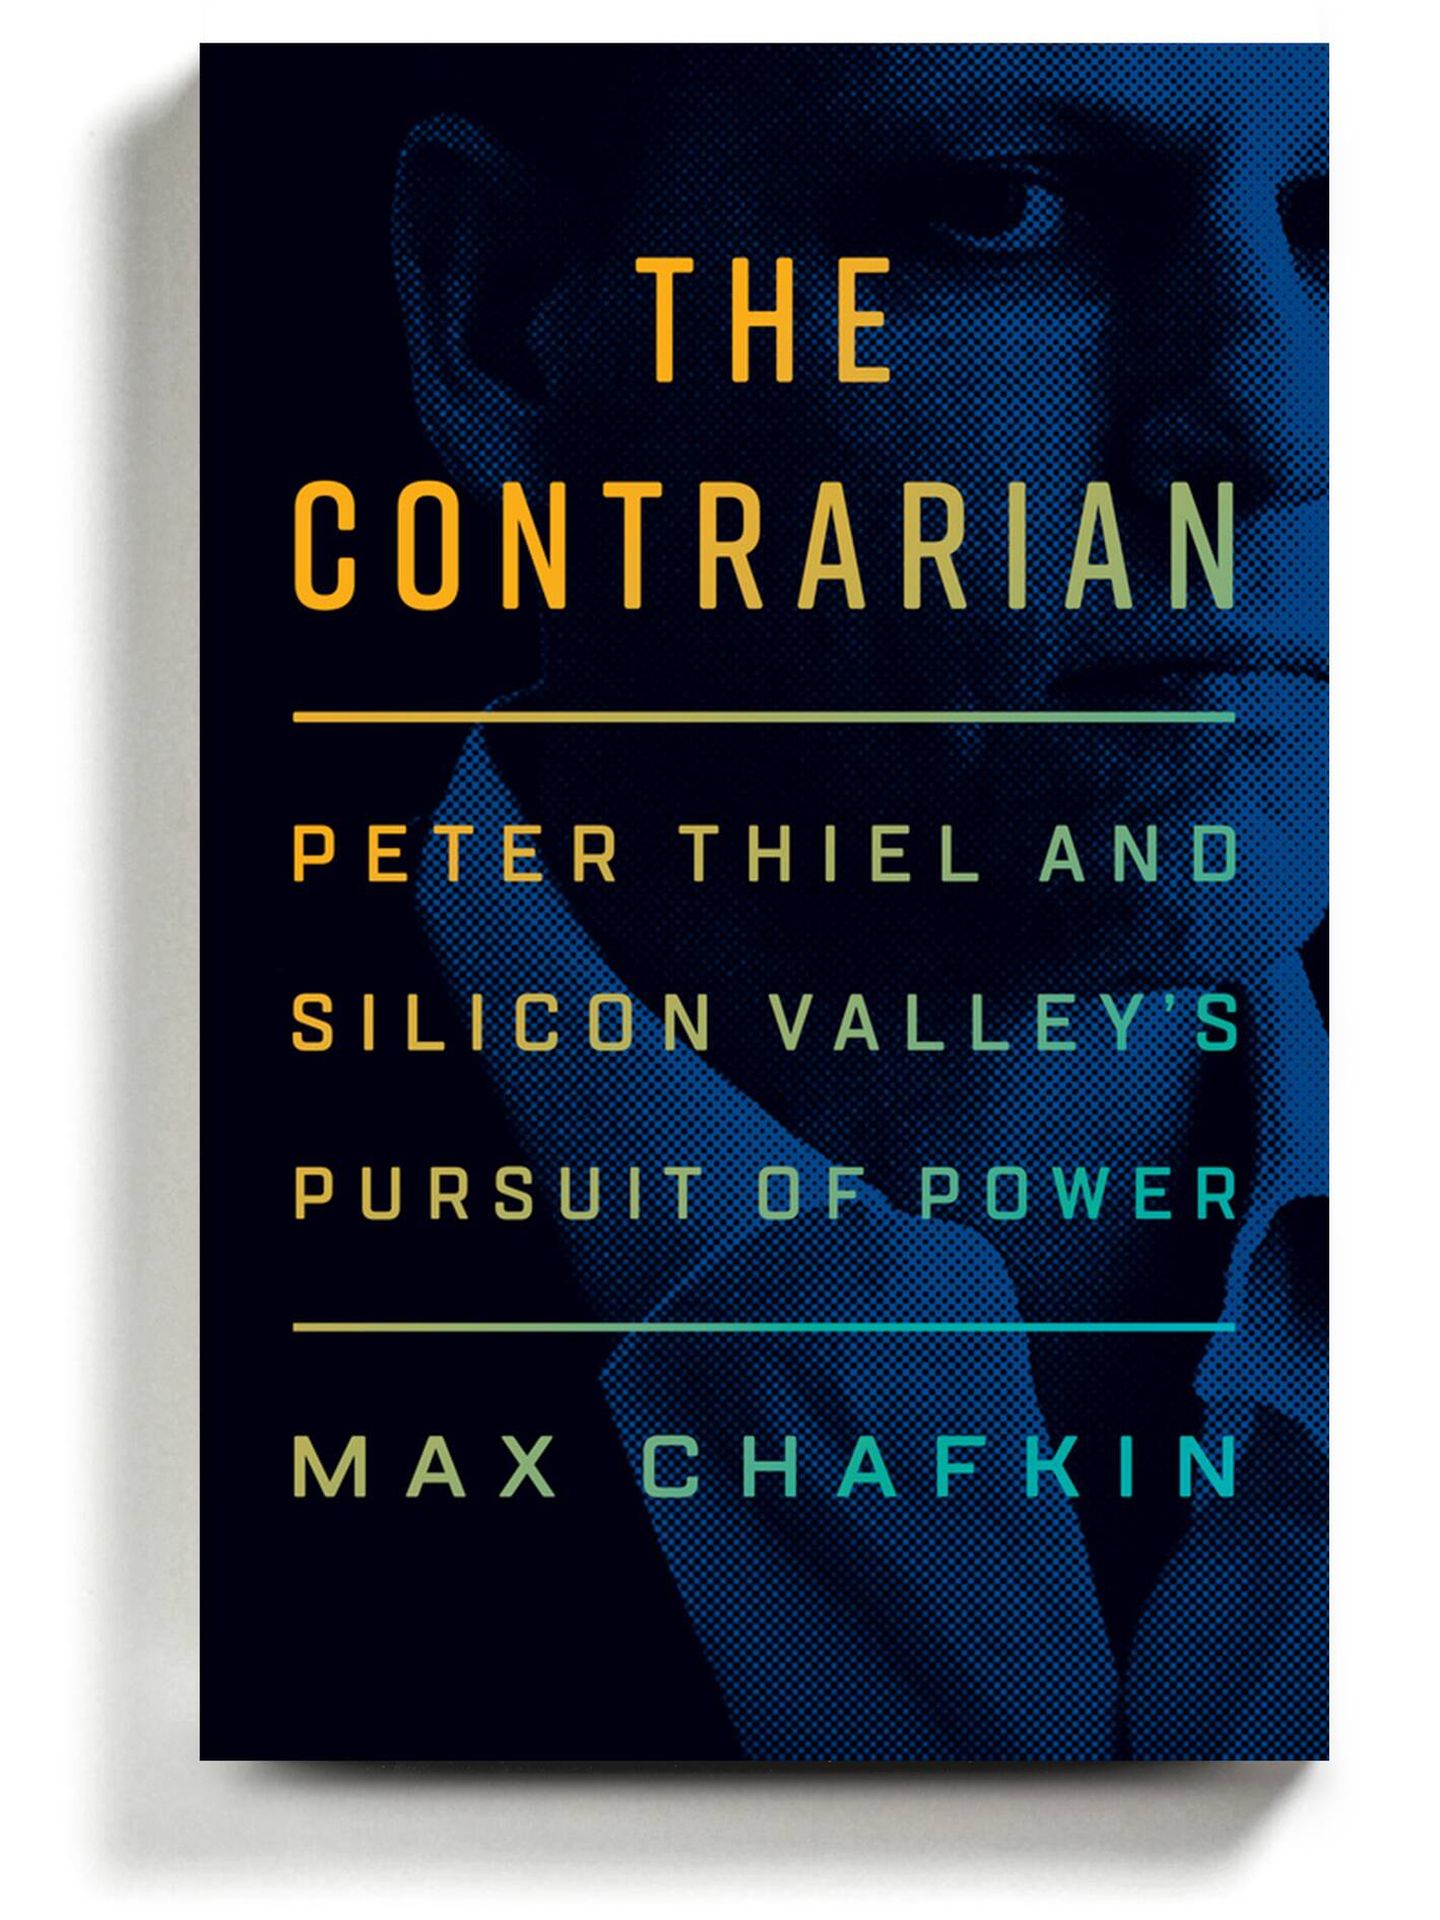 'The Contrarian', la nueva biografía sobre Peter Thiel.